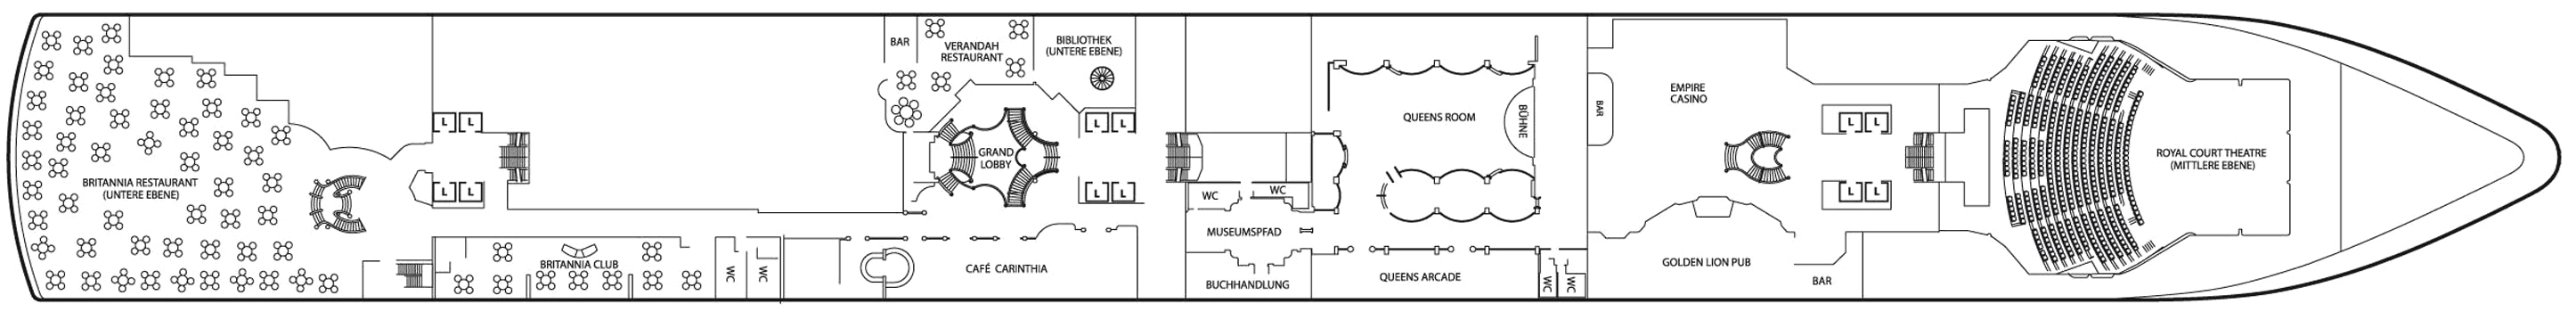 Queen Elizabeth - Cunard Line - Deck 2 (Deck 2)